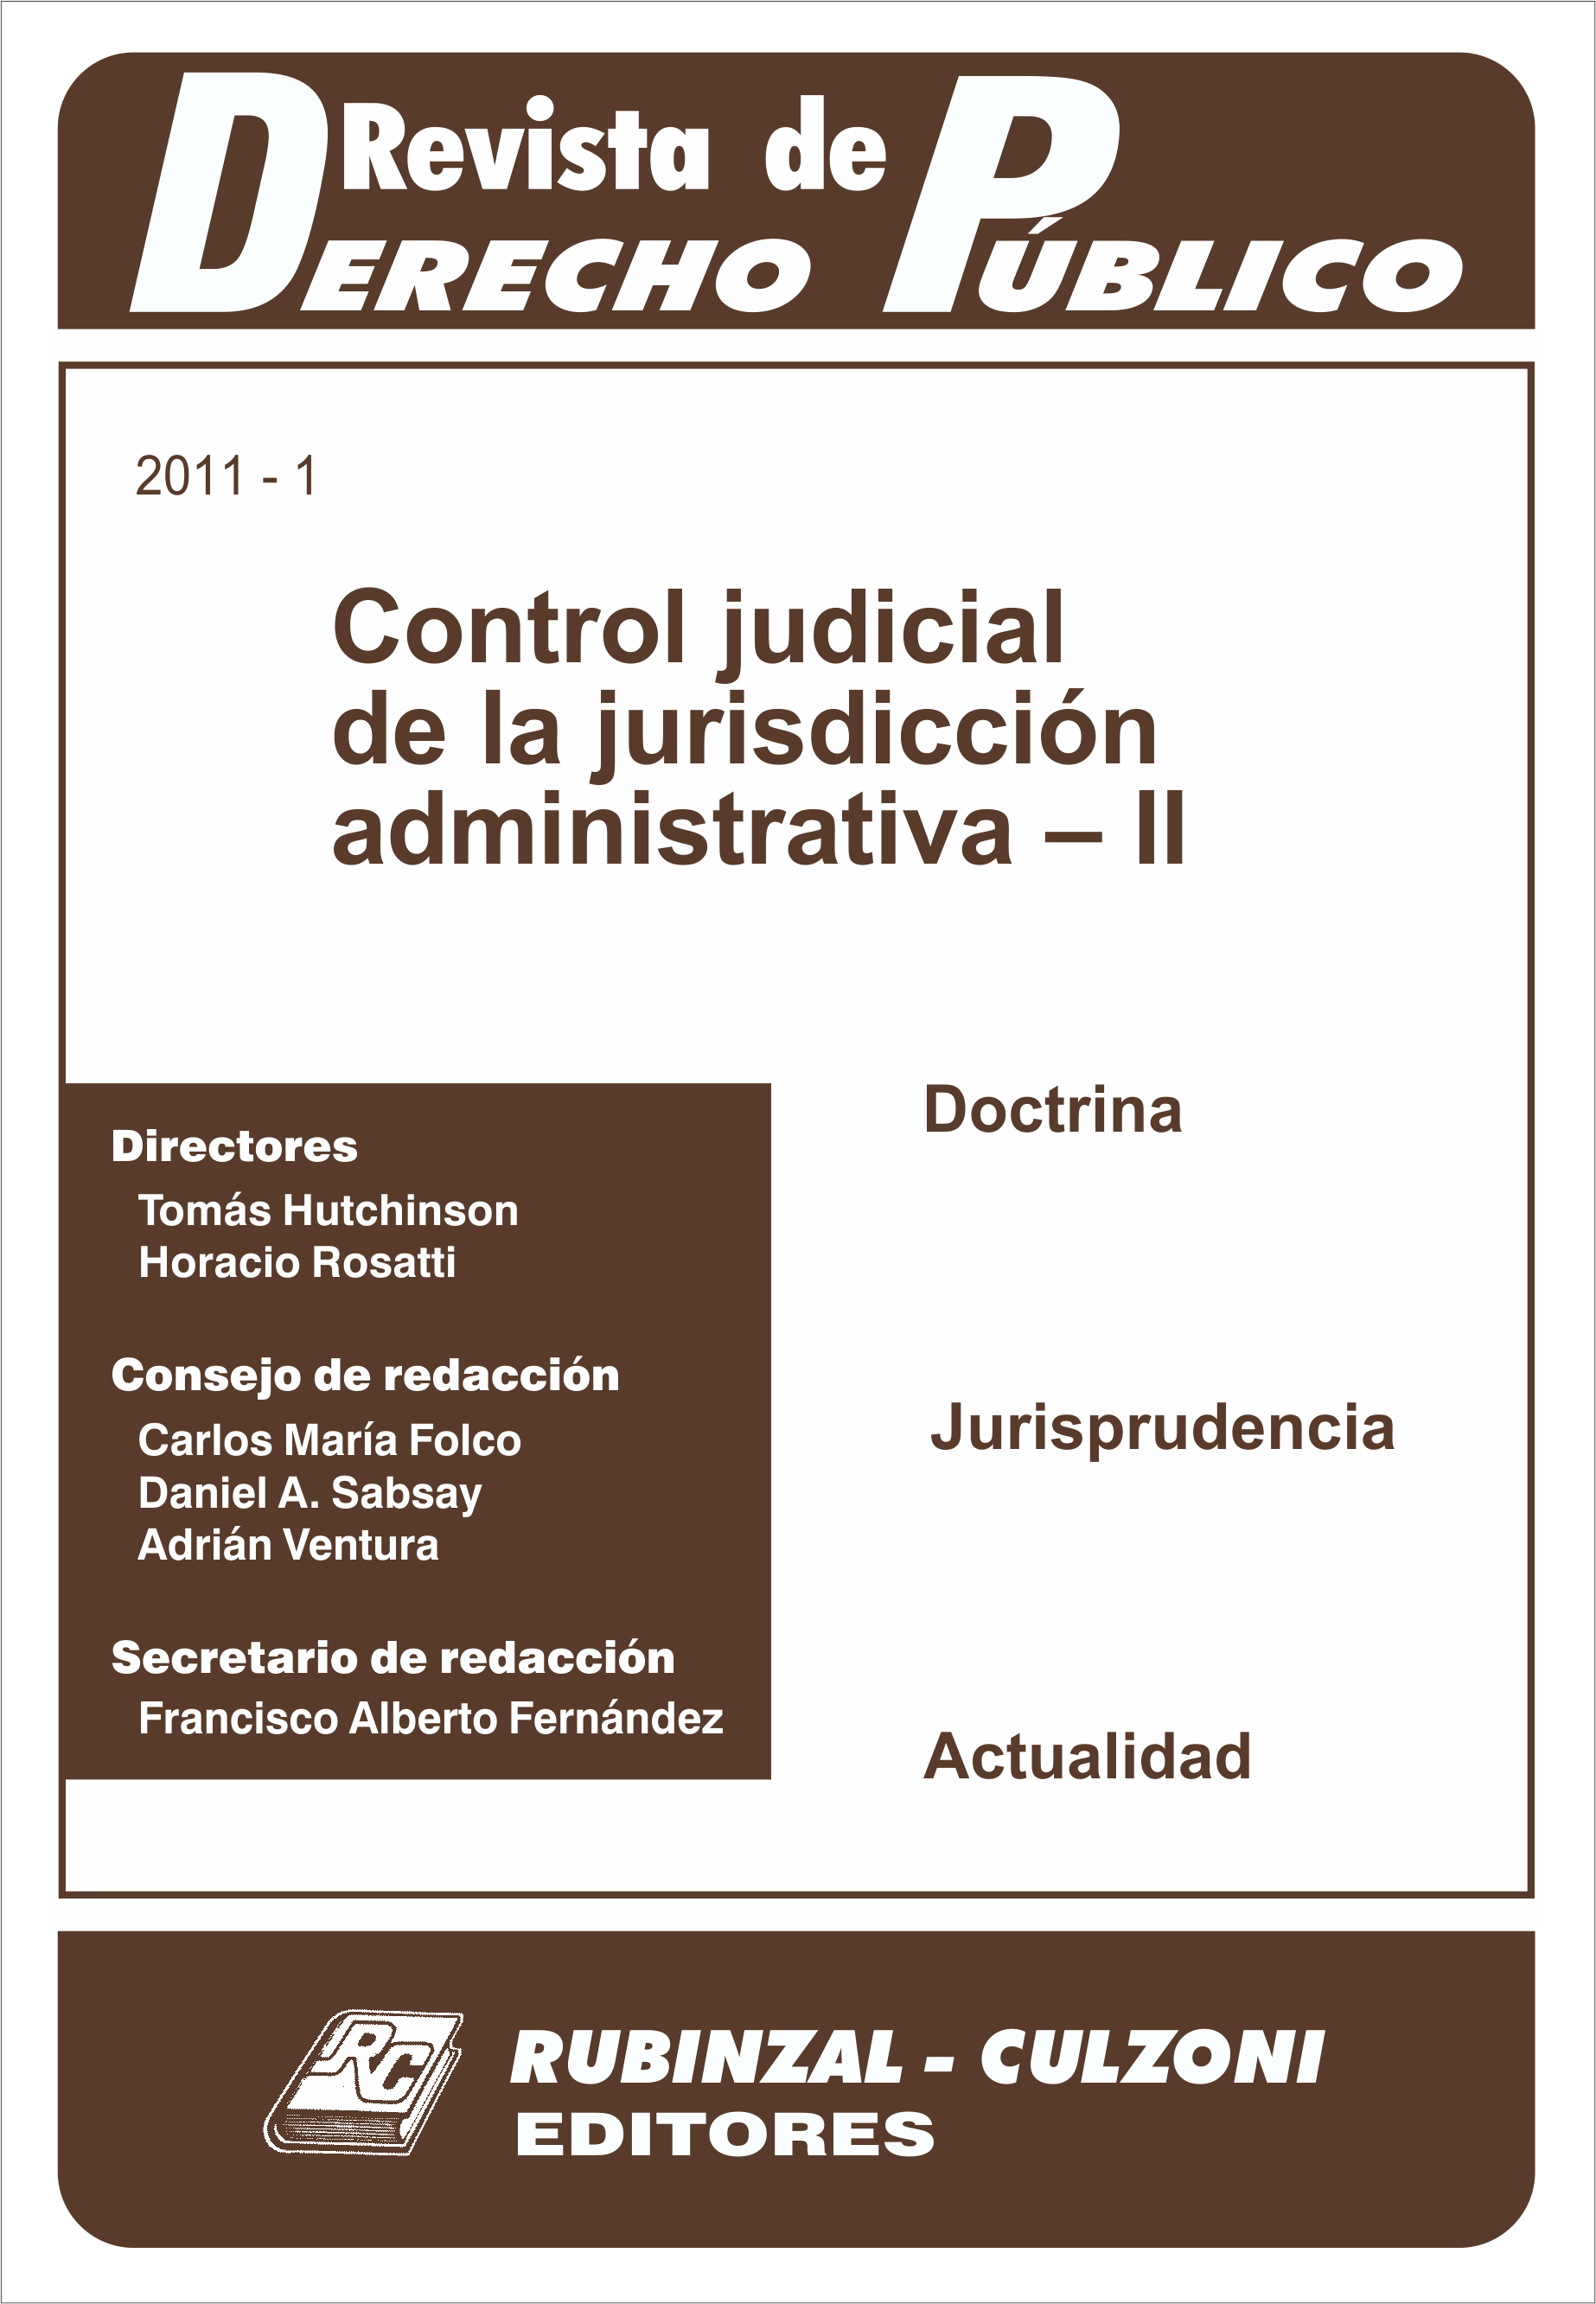 Revista de Derecho Público - Control judicial de la jurisdicción administrativa - II